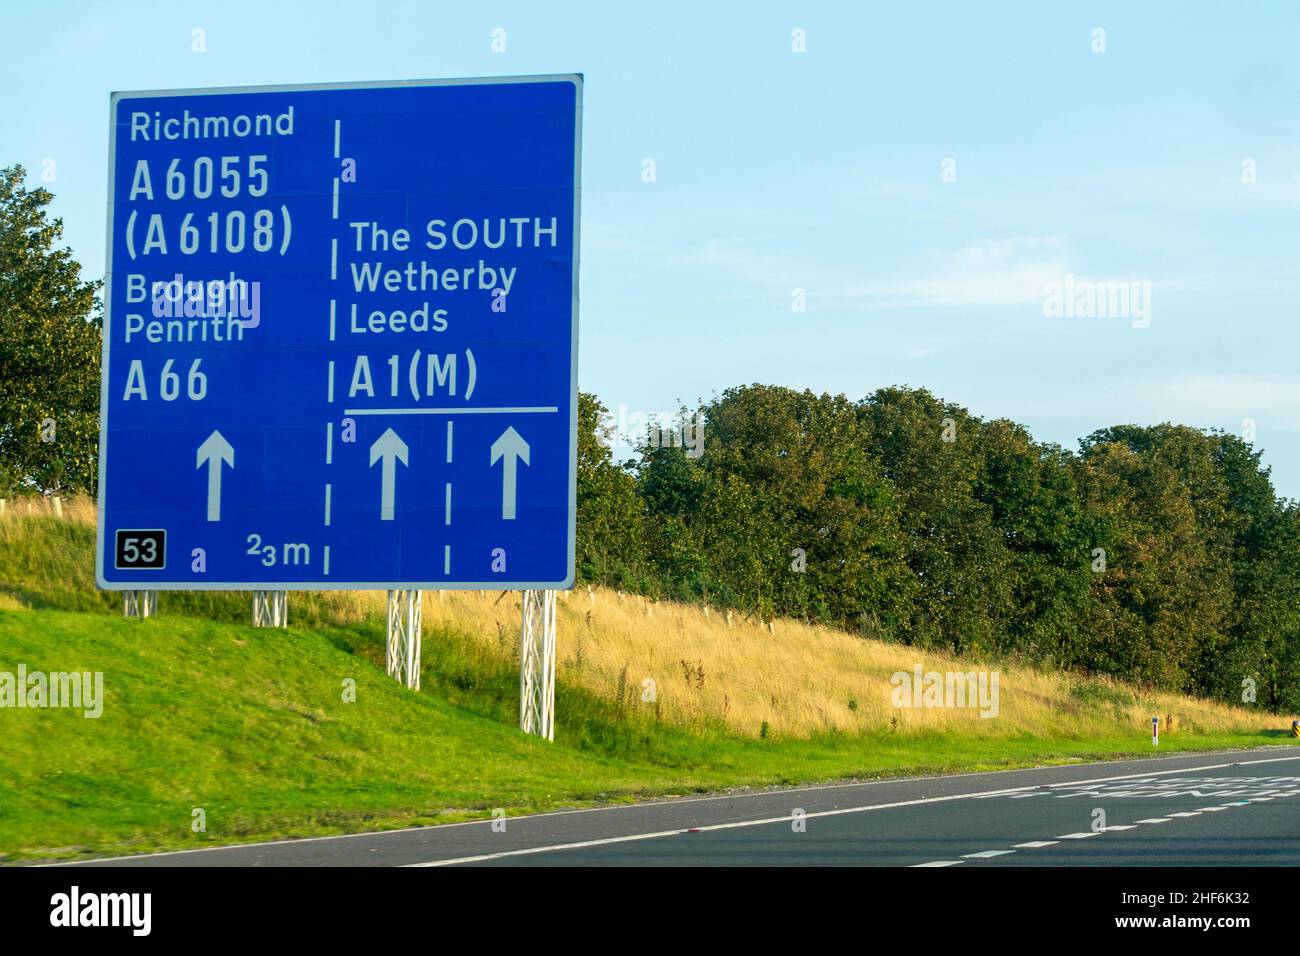 Leeds, Reino Unido - 23rd de agosto de 2019: Los coches conducen por la autopista británica A1 con señales azules de la autopista que dirigen a los conductores a Richmond, Leeds, Brough, Wetherby, Foto de stock